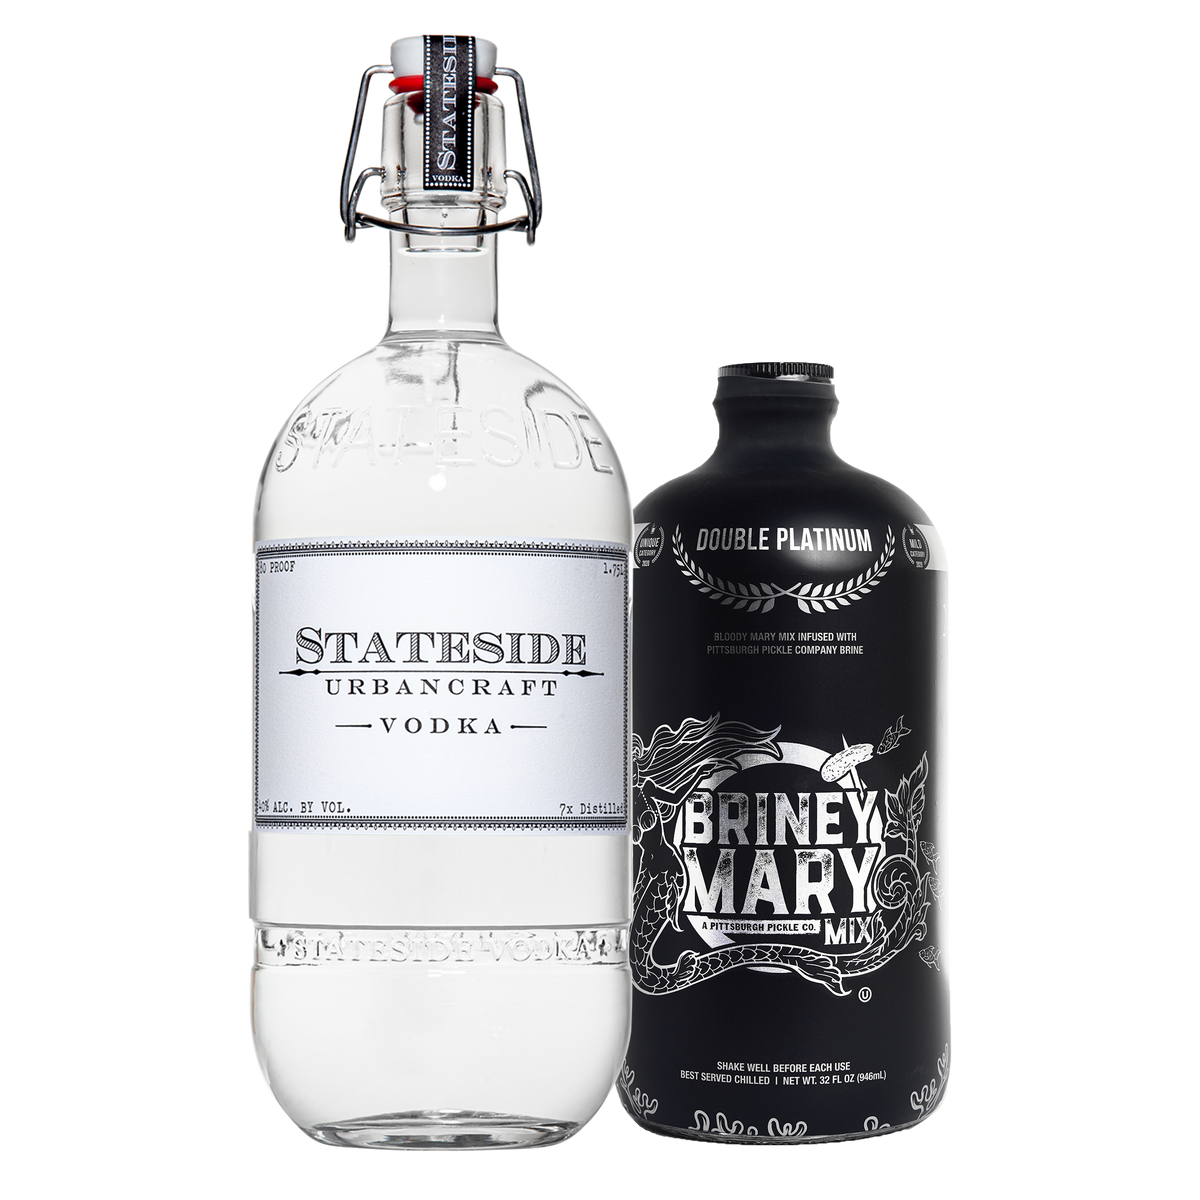 Stateside Glass Bottles – Stateside Vodka